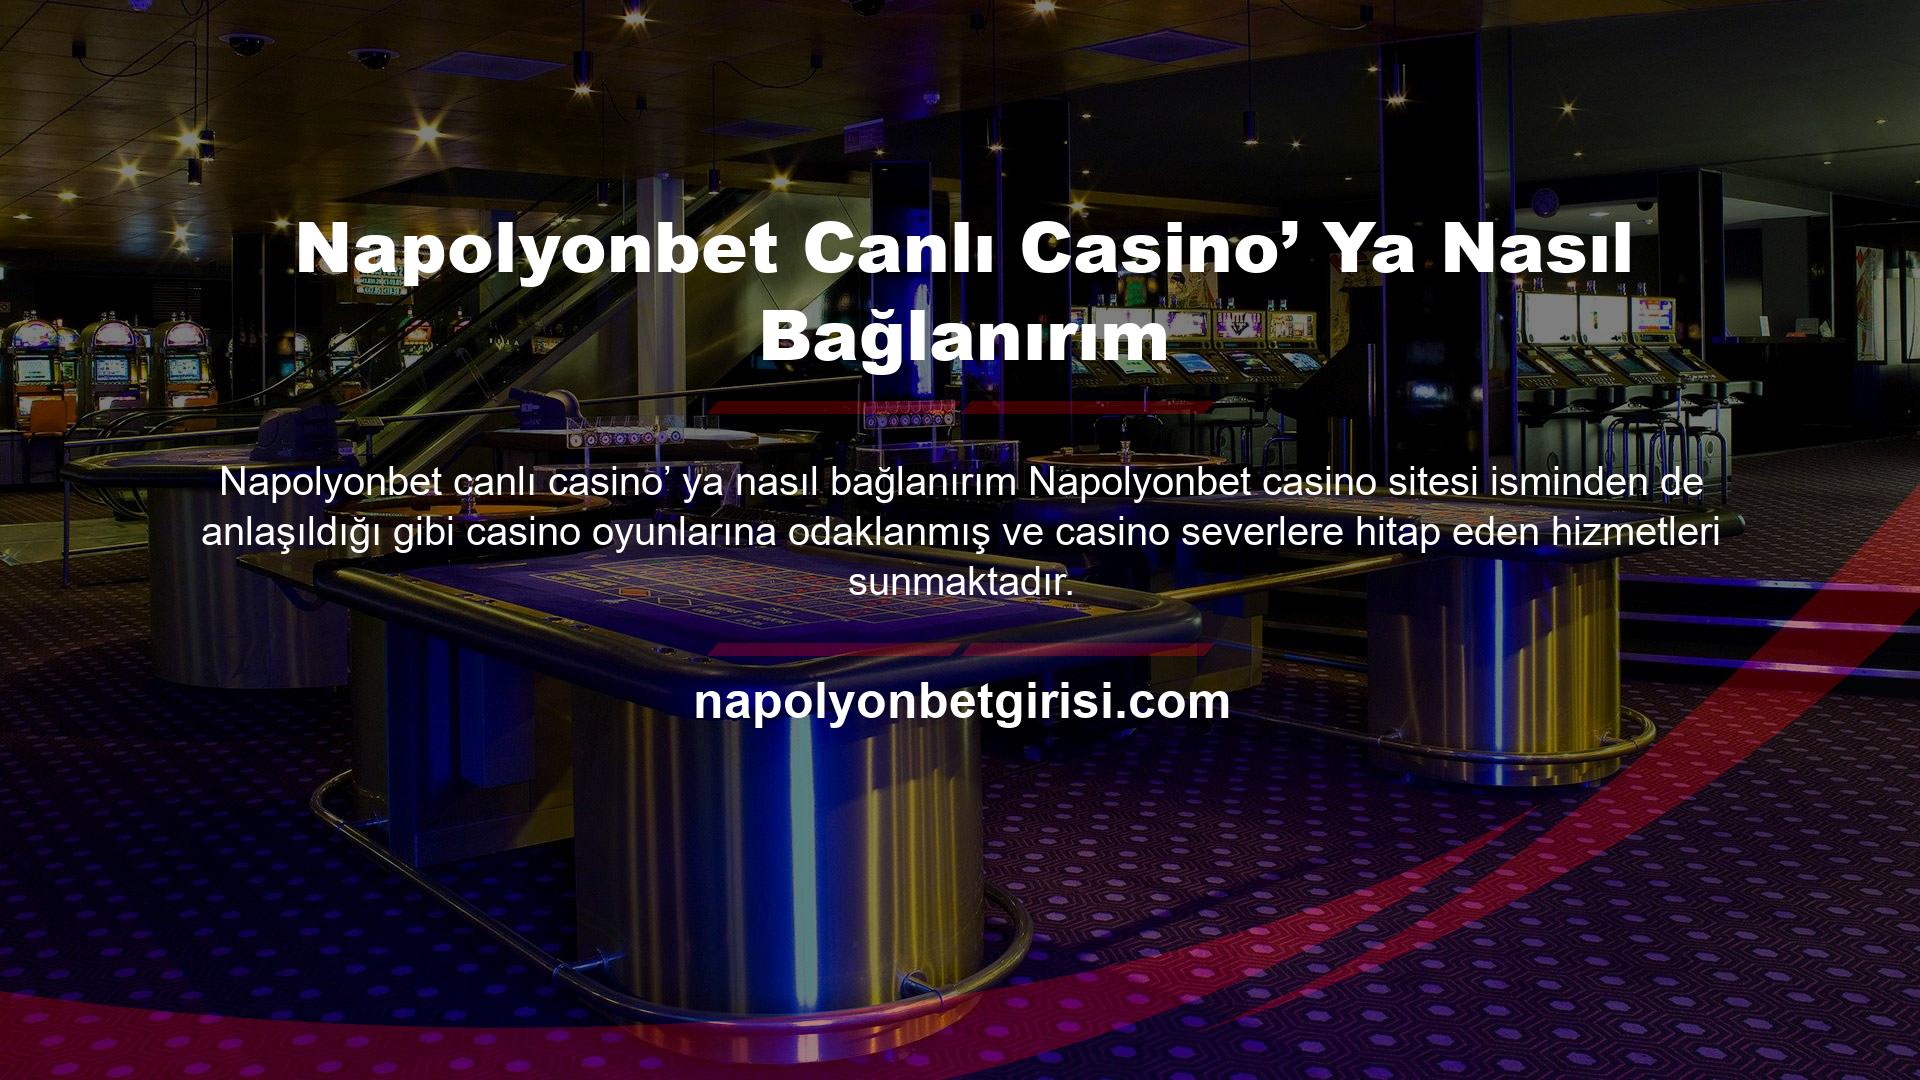 Napolyonbet casino sitesine bağlanmak için yapmanız gereken ilk adım sitenin son kullanılan yeni sitesine erişim sağlamaktadır